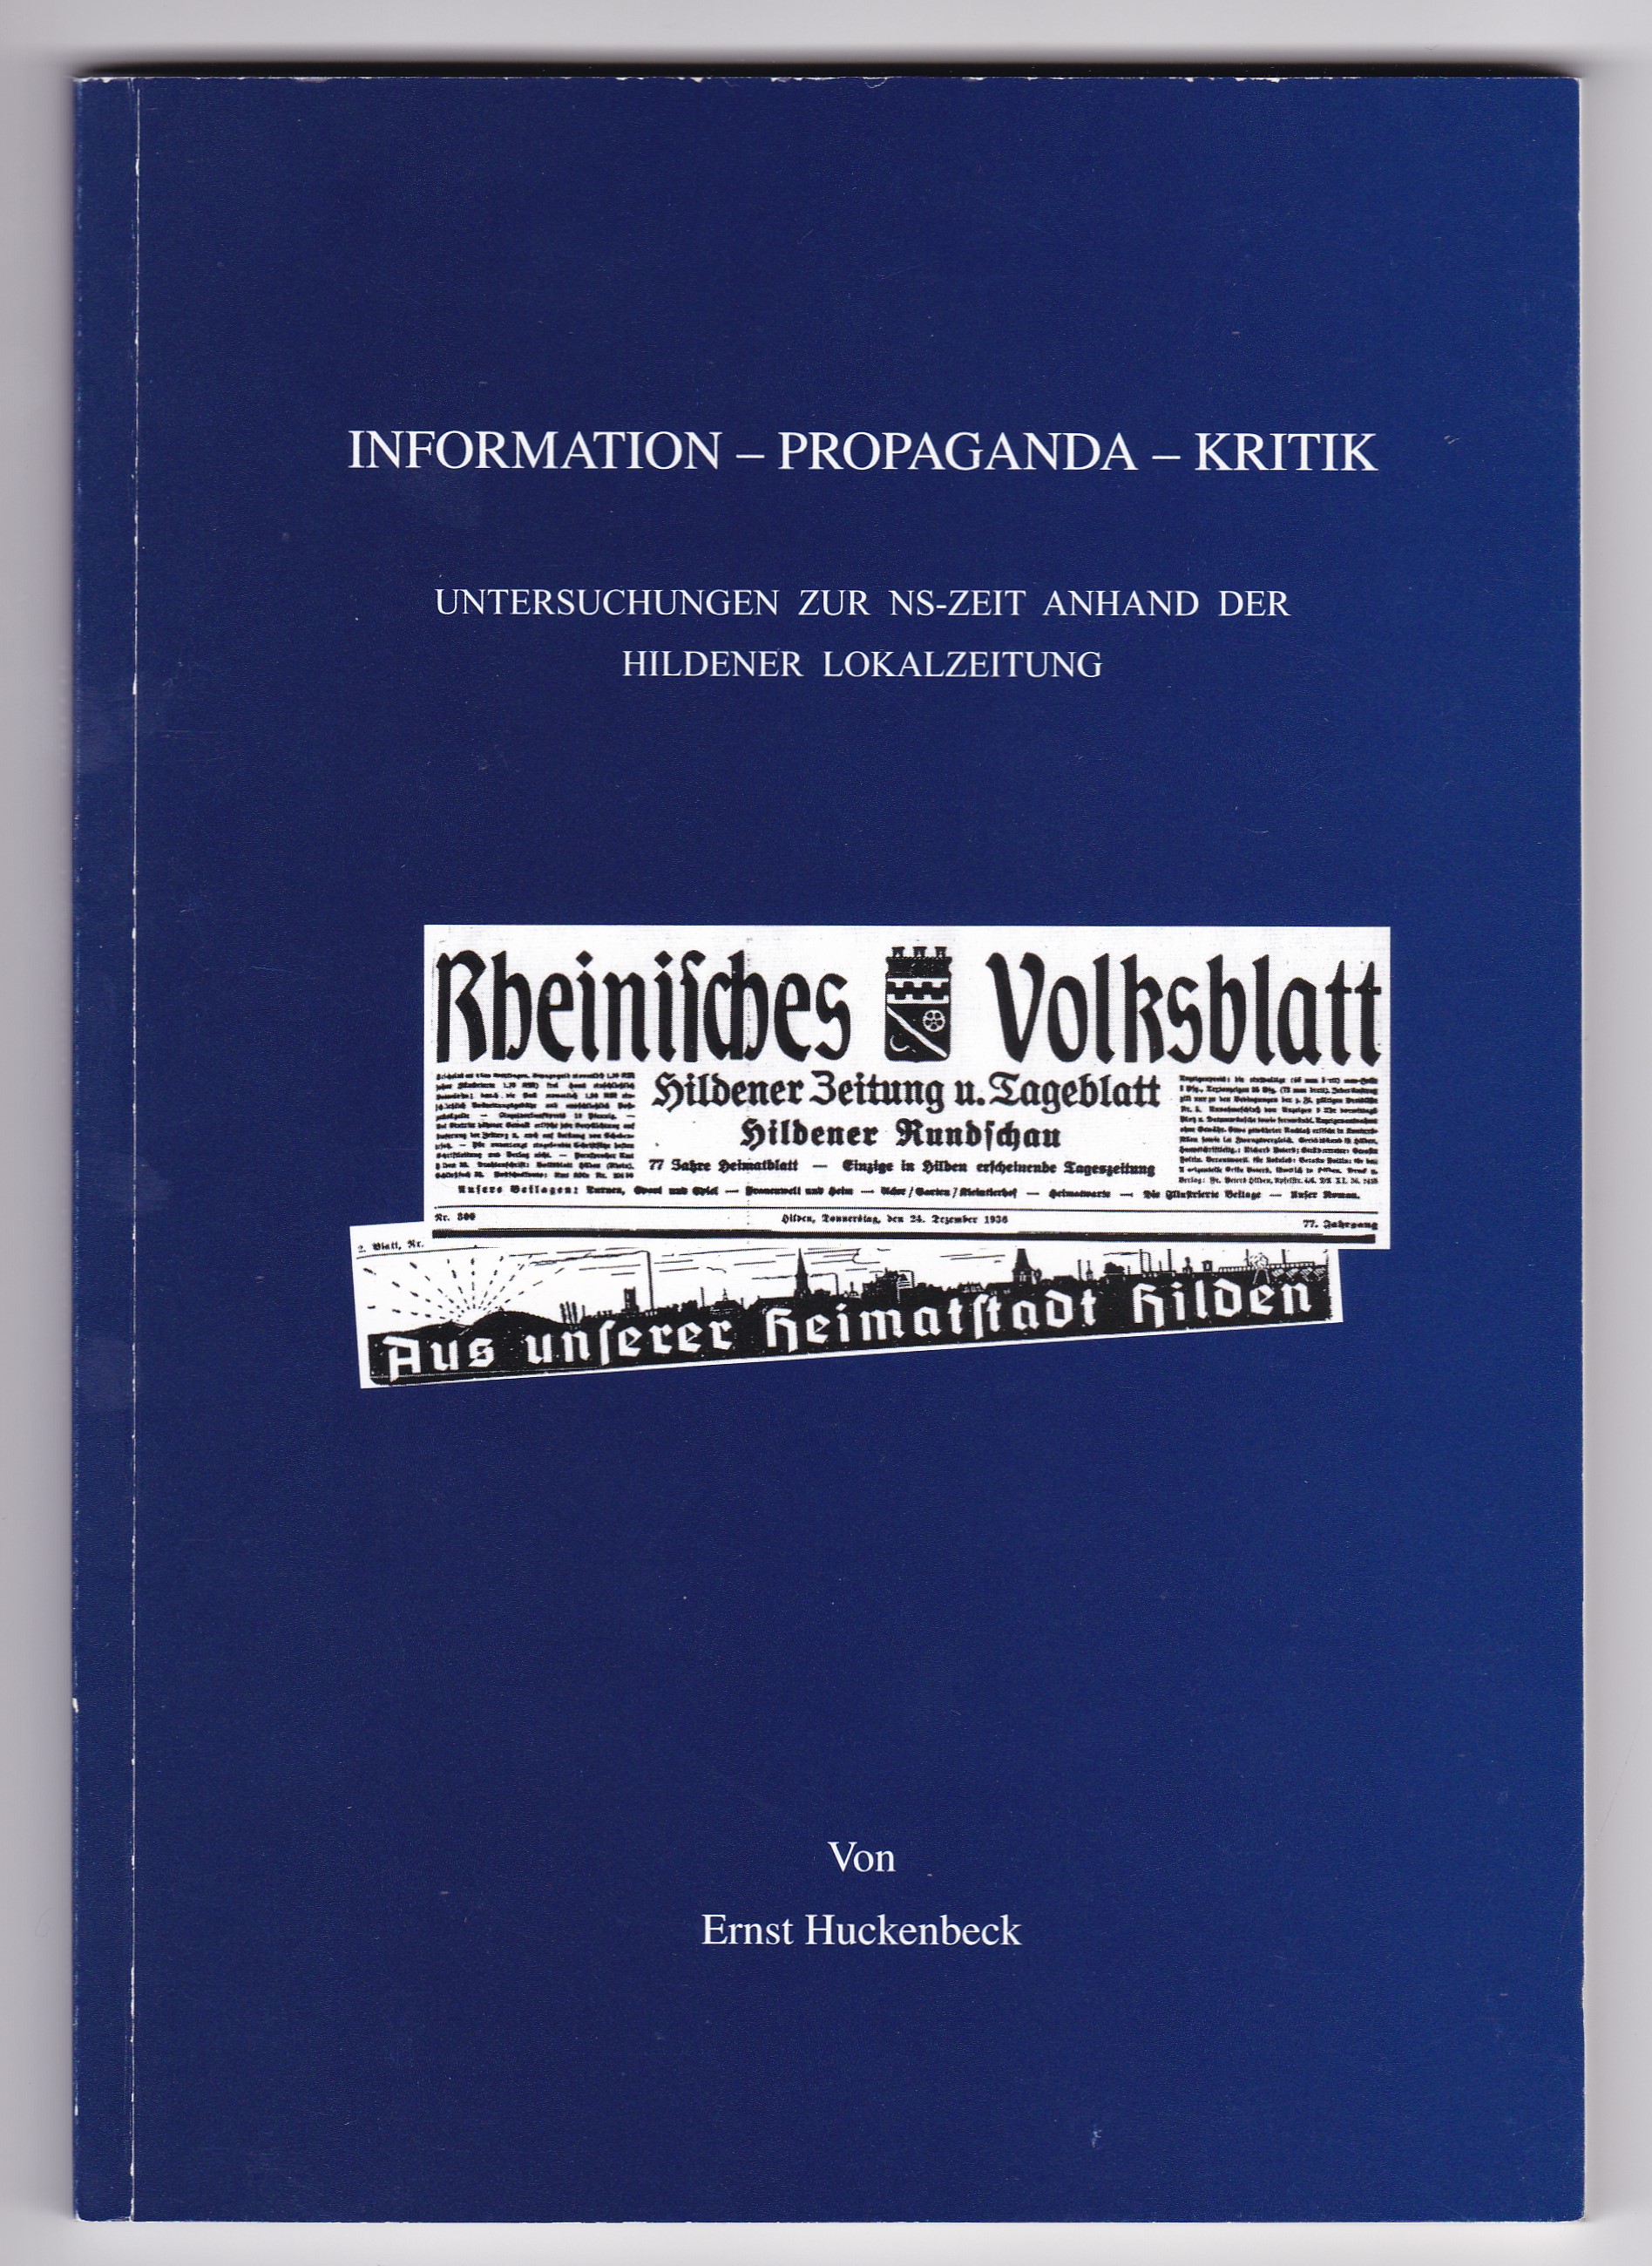 Information - Propaganda - Kritik. Untersuchungen zur NS-Zeit anhand der Hildener Lokalzeitung von Ernst Huckenbeck. Hilden - Huckenbeck, Ernst